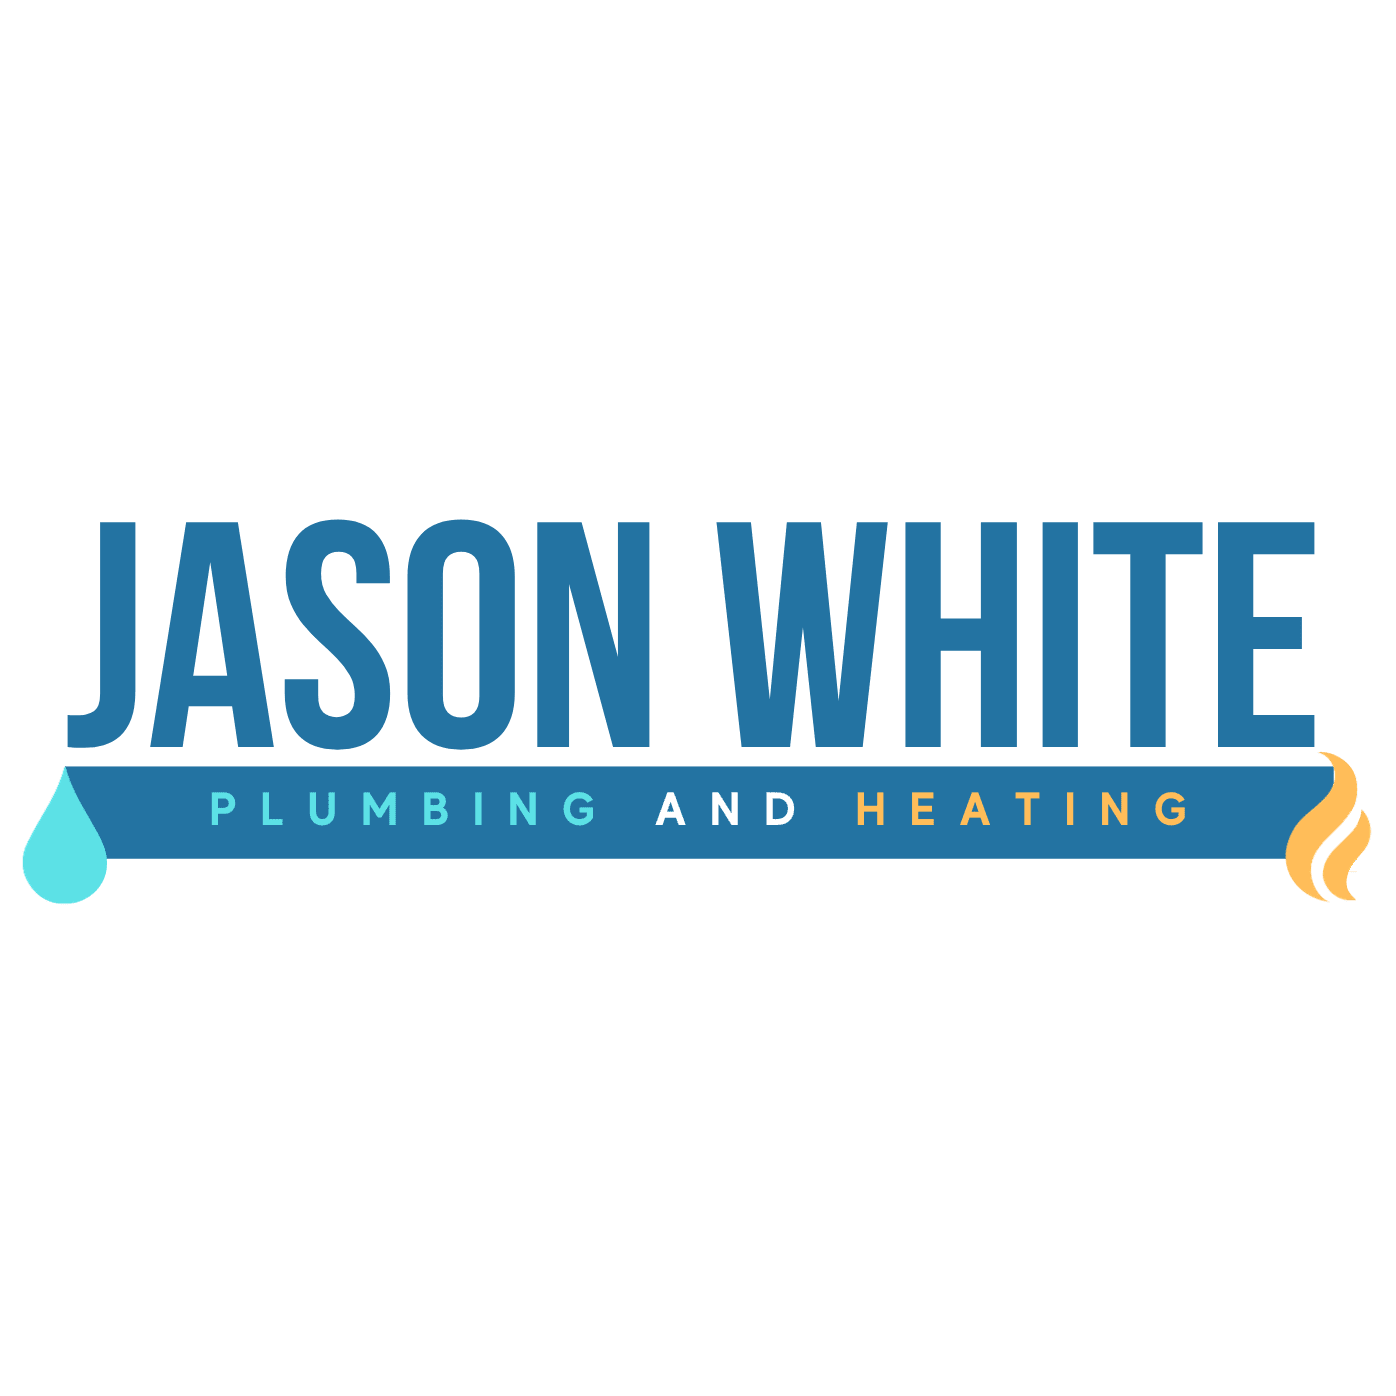 Jason White Plumbing & Heating logo